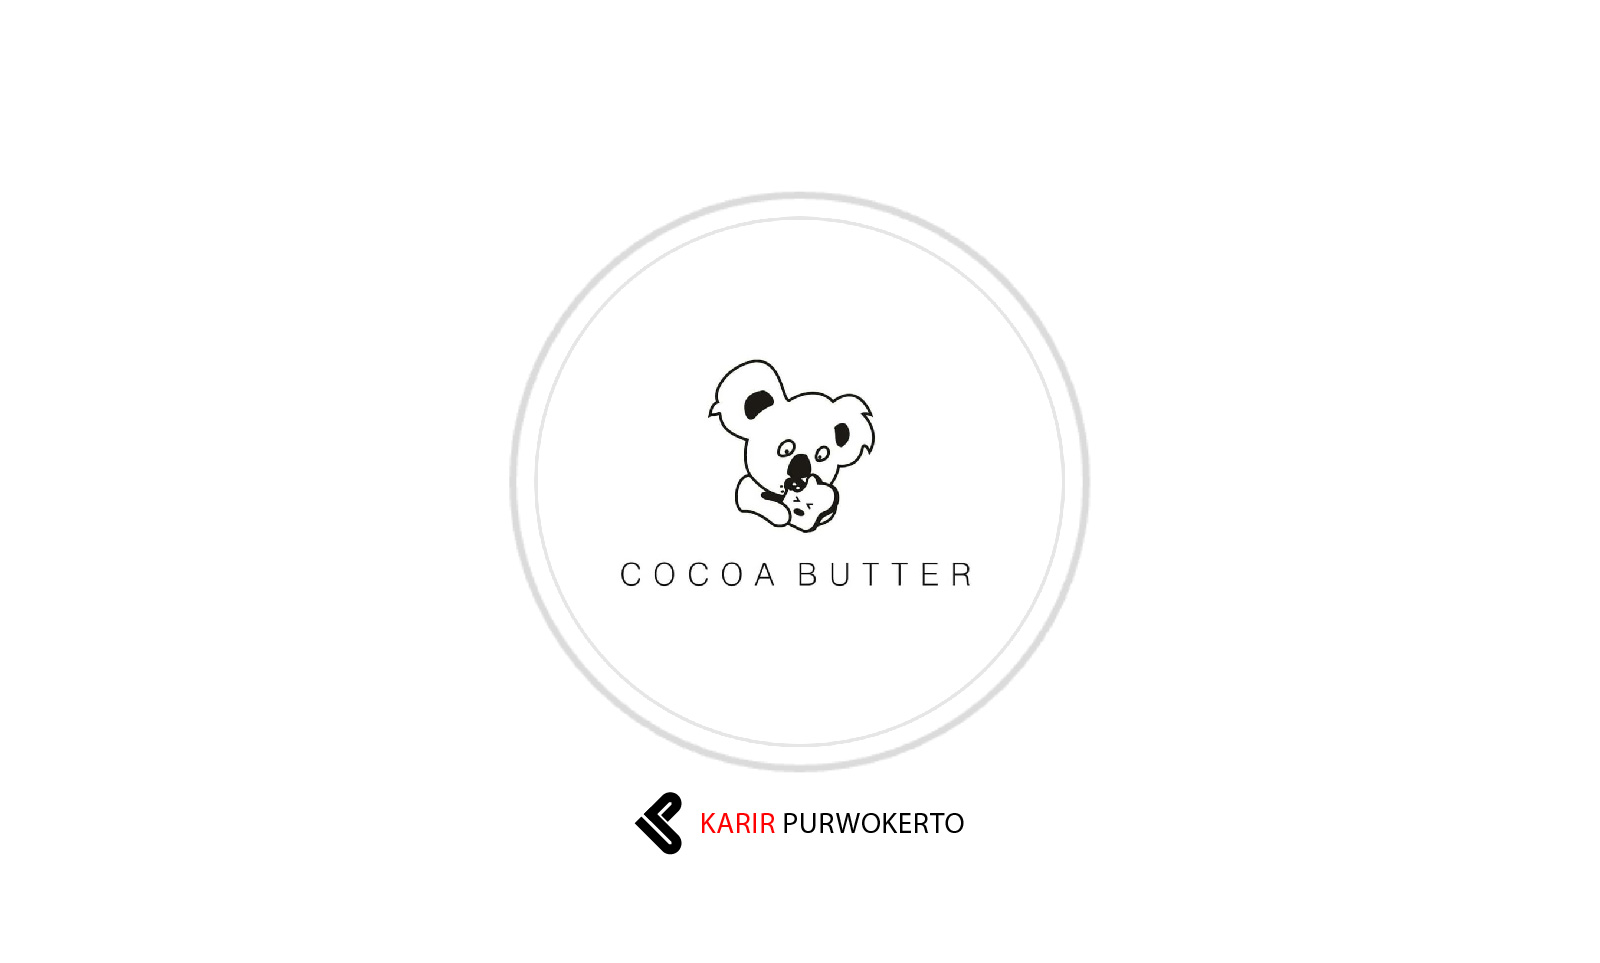 Lowongan Terbaru Toko Roti Cocoa Butter